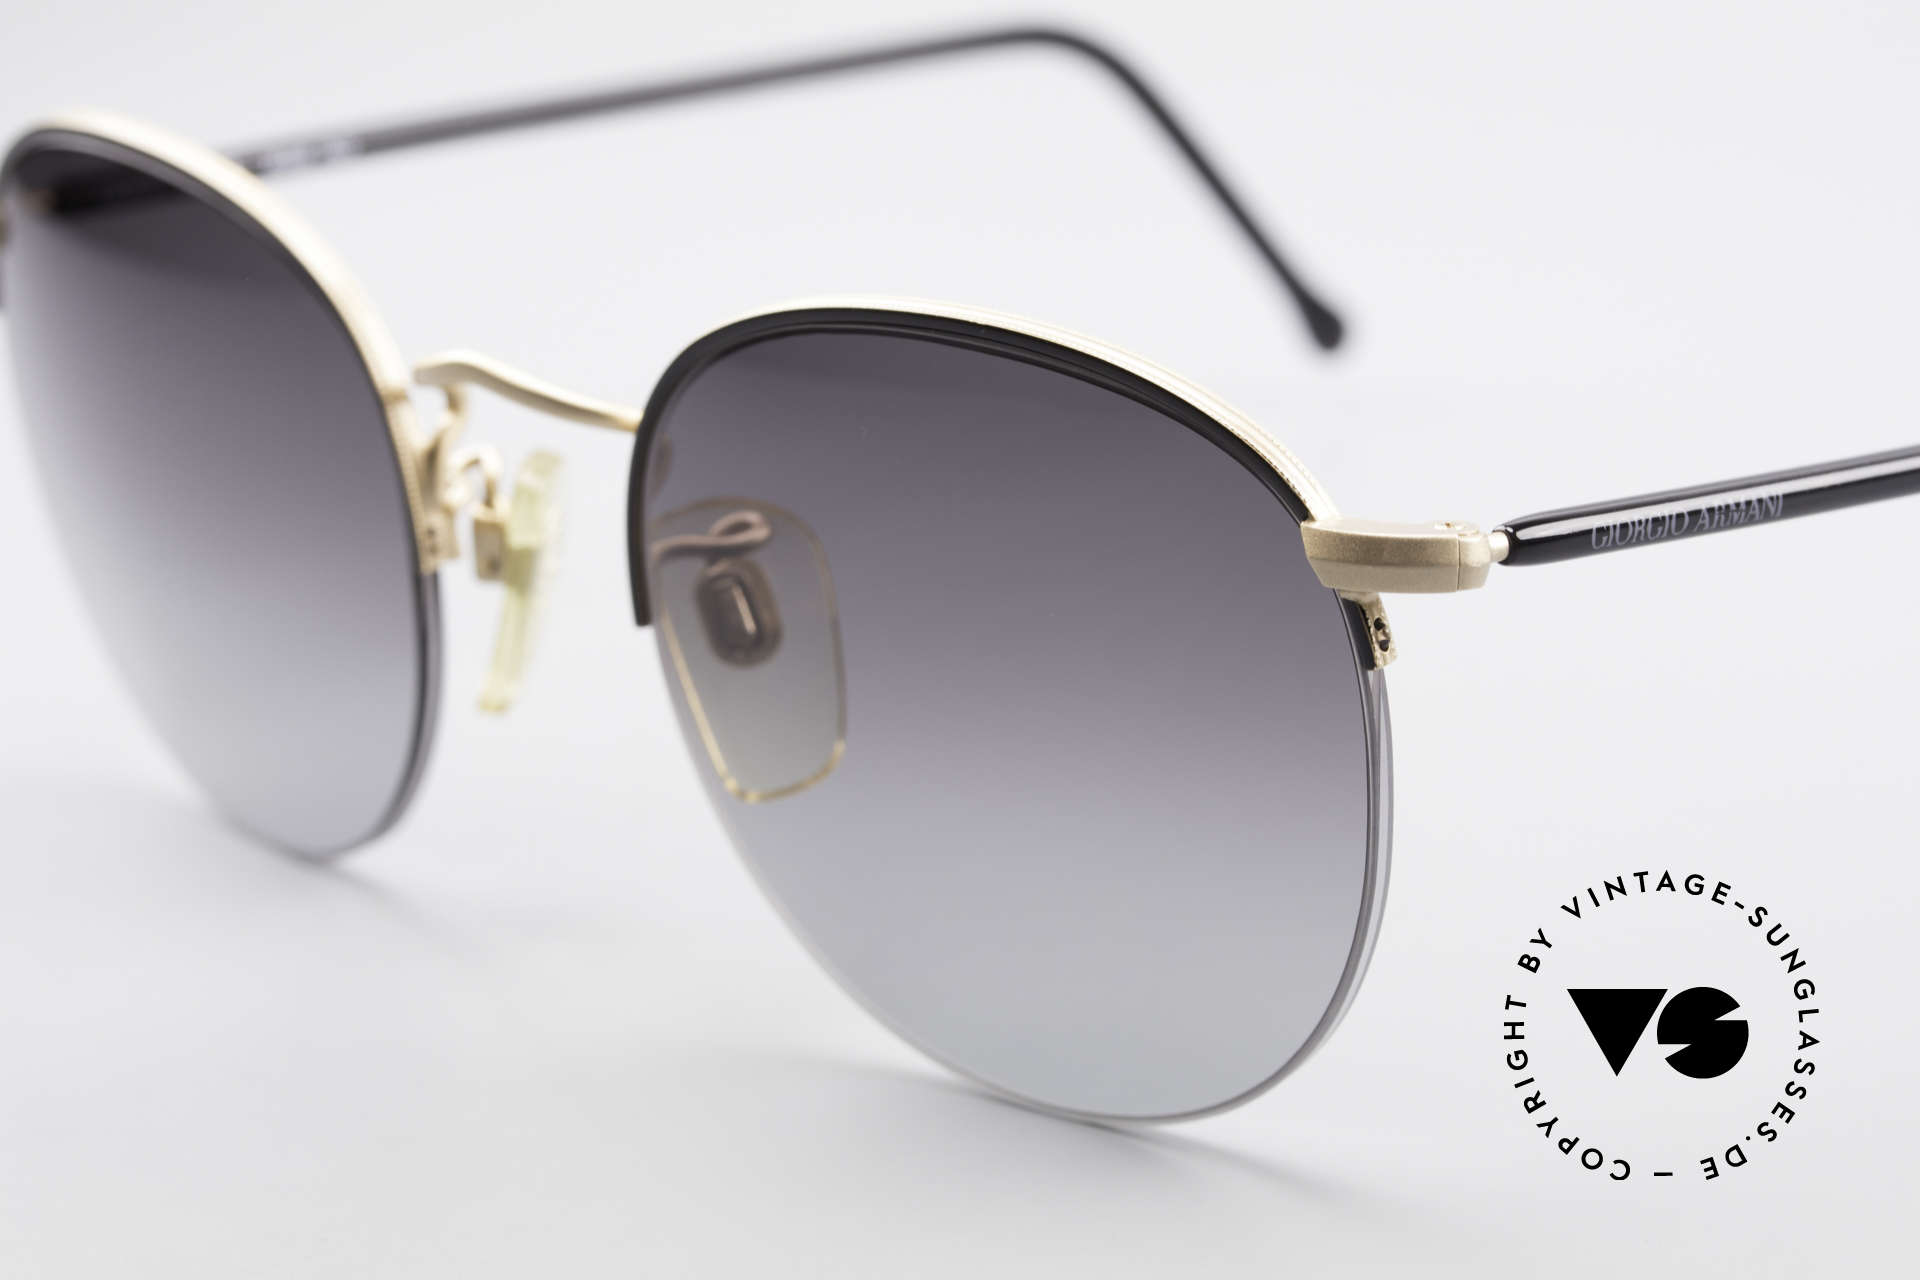 Giorgio Armani 142 Randlose Panto Sonnenbrille, ungetragenes Einzelstück in herausragender Qualität, Passend für Herren